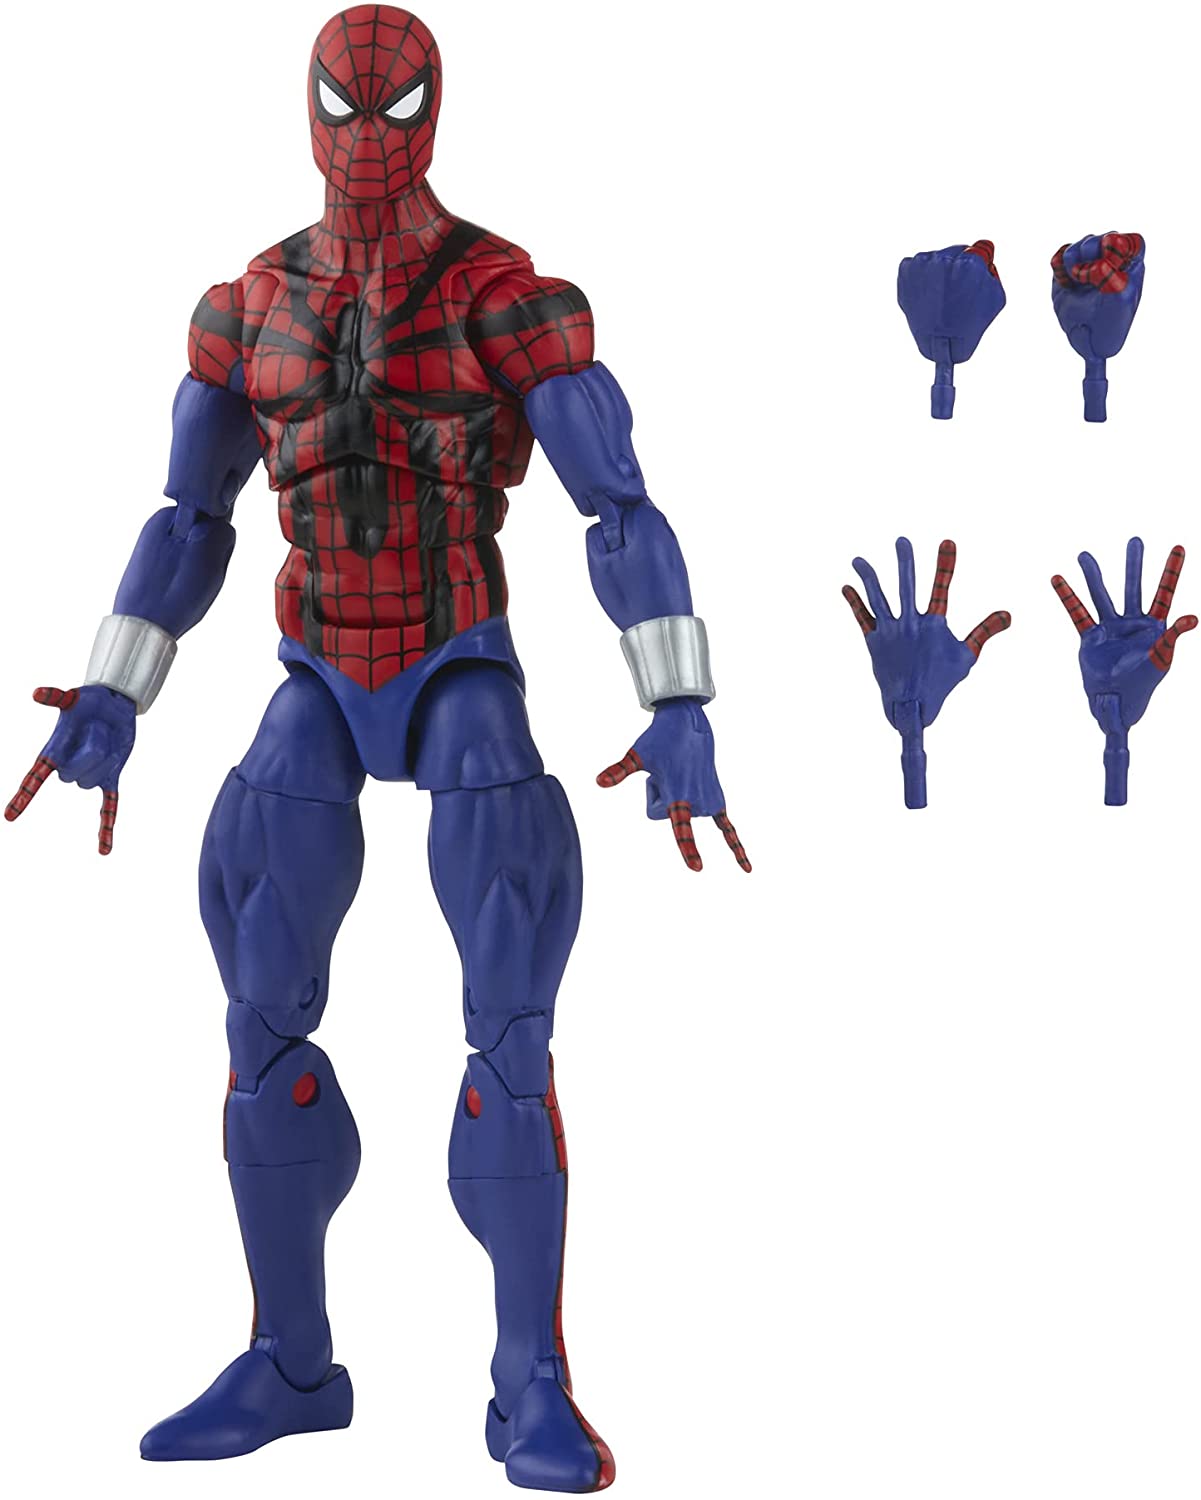 Spider-Man Retro Marvel Legends Ben Reilly Spider-Man 6-Inch Action Figure - Retro Heretoserveyou